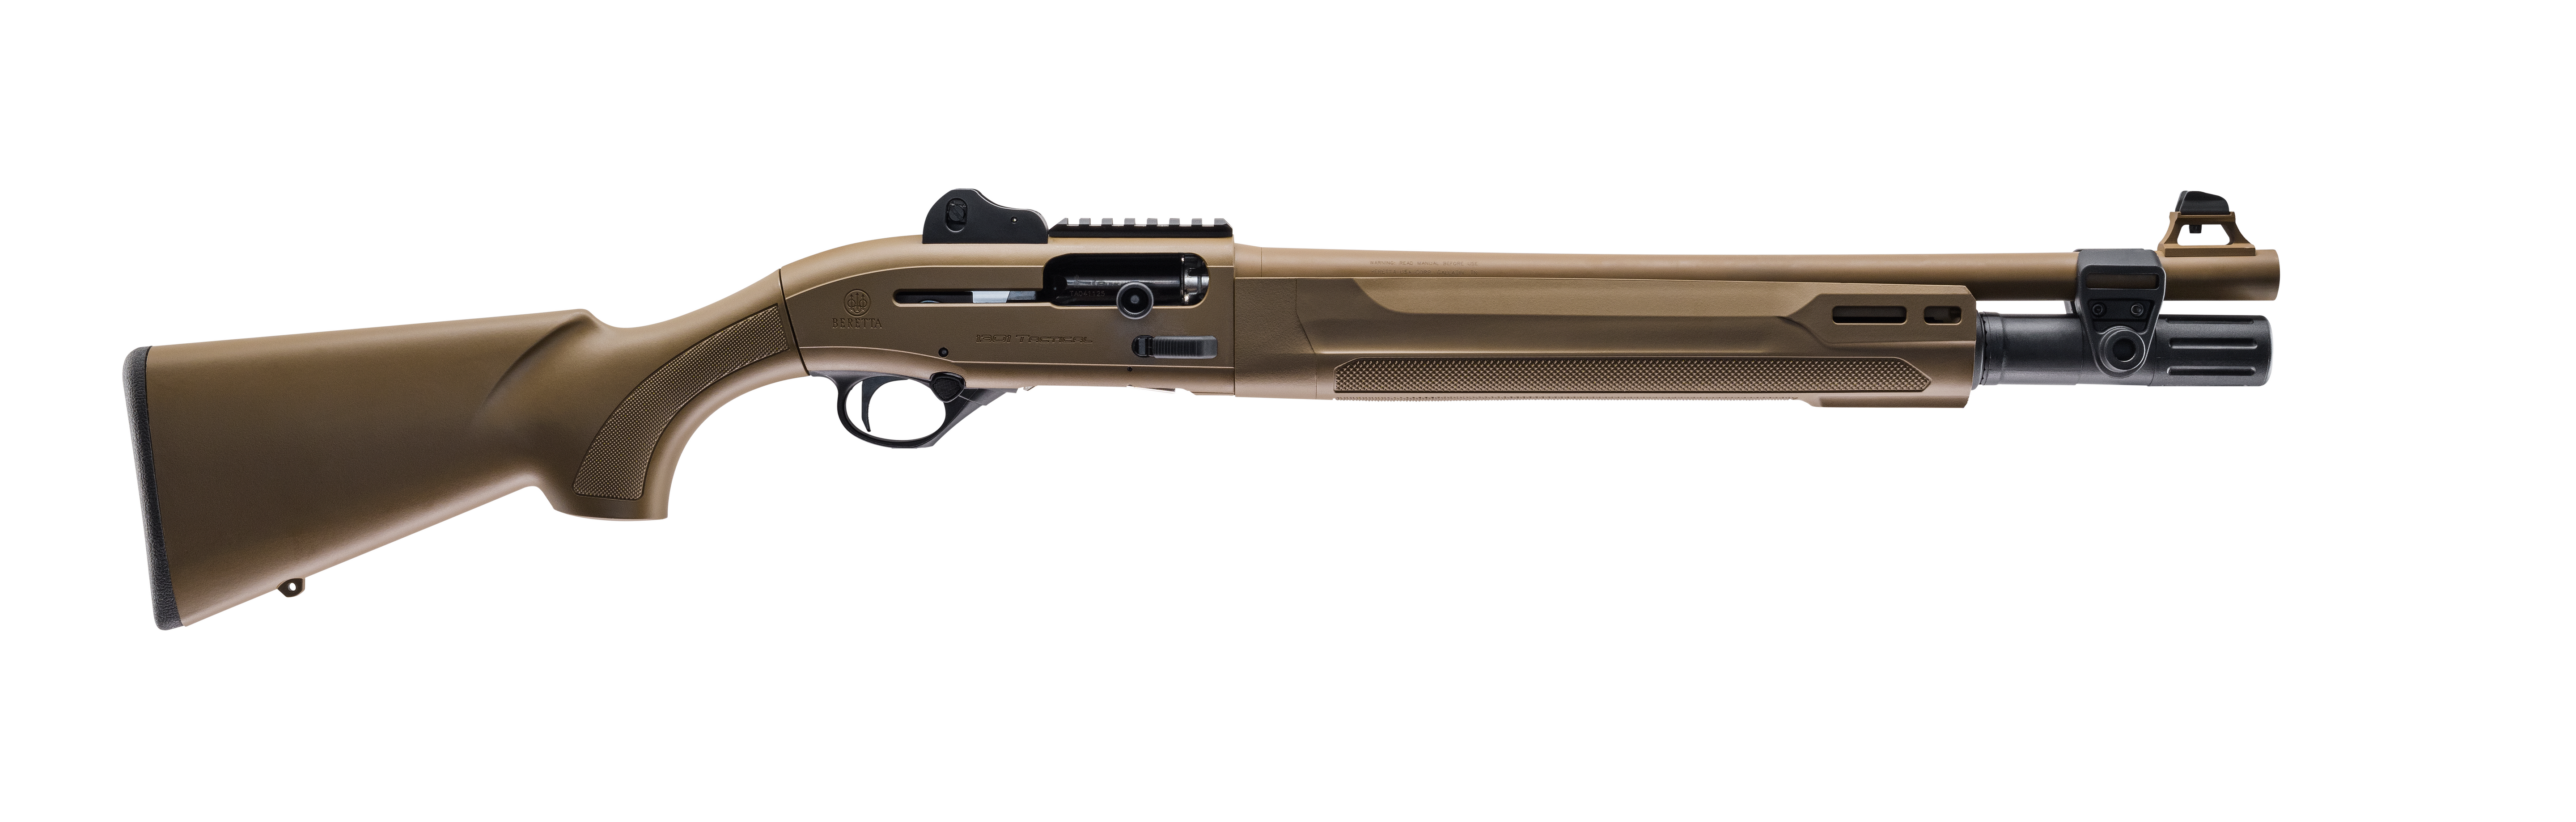 Beretta 1301 Tactical Mod 2